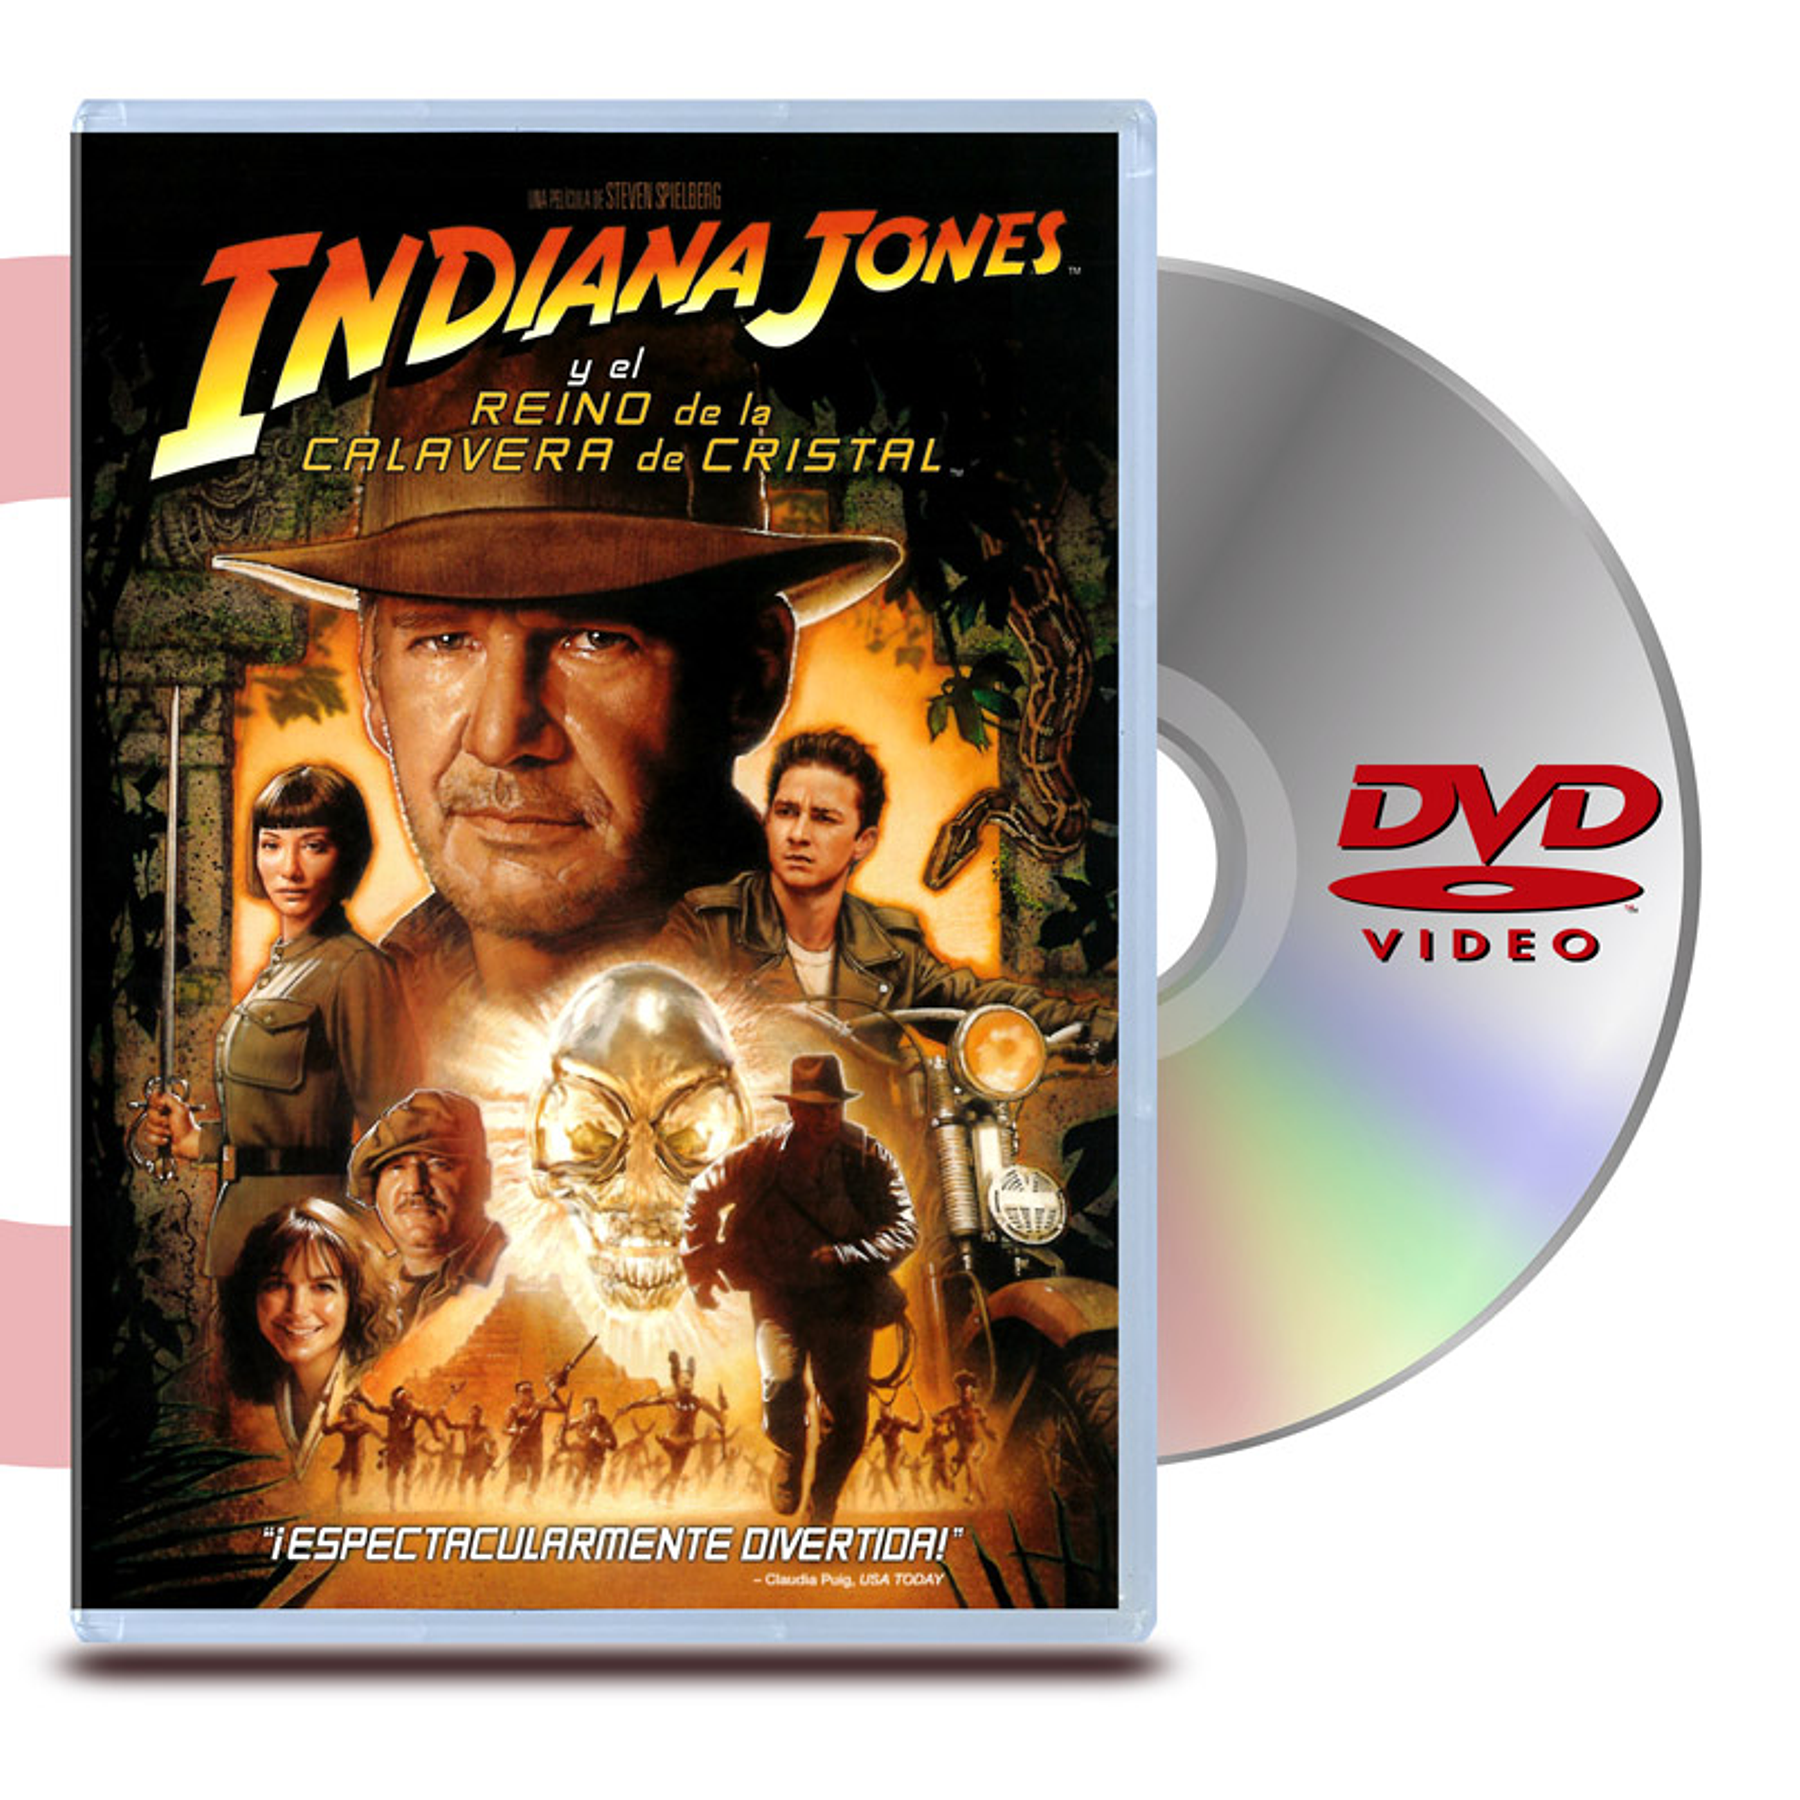 DVD INDIANA JONES 4: EL REINO DE LA CALAVERA DE CRISTAL